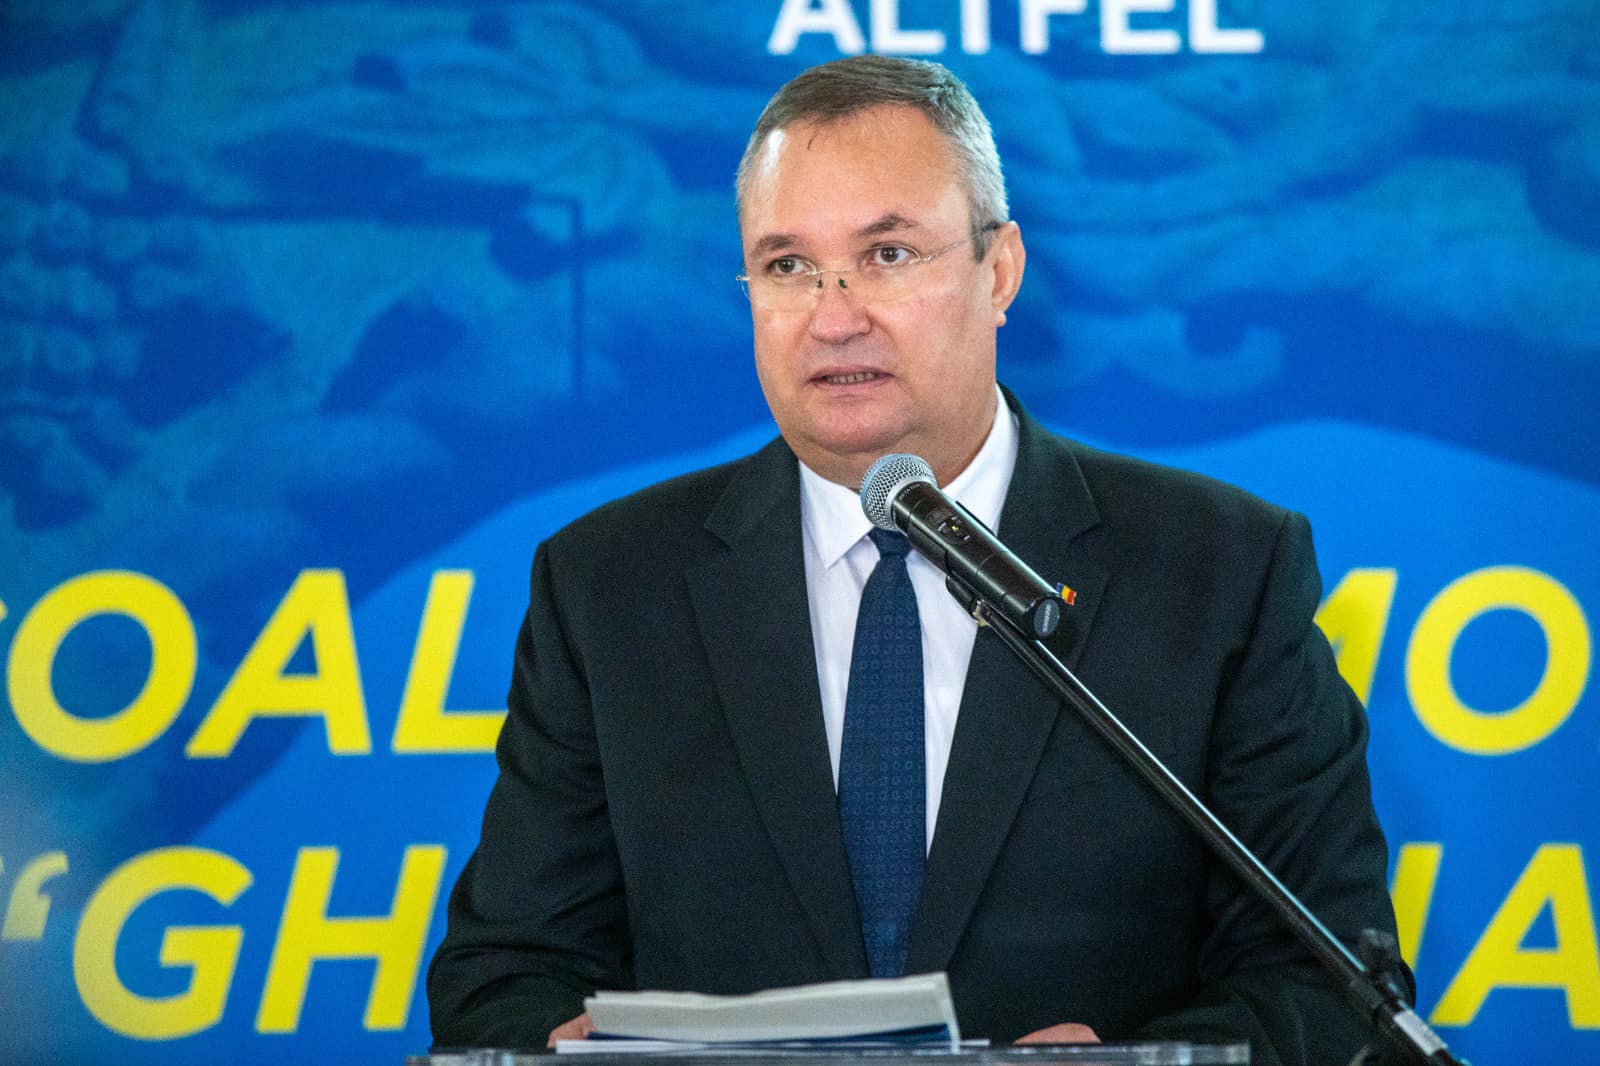 Premierul-președinte PNL, Nicolae Ionel Ciucă, a anunțat luni seara noile creșteri ale punctului de pensie